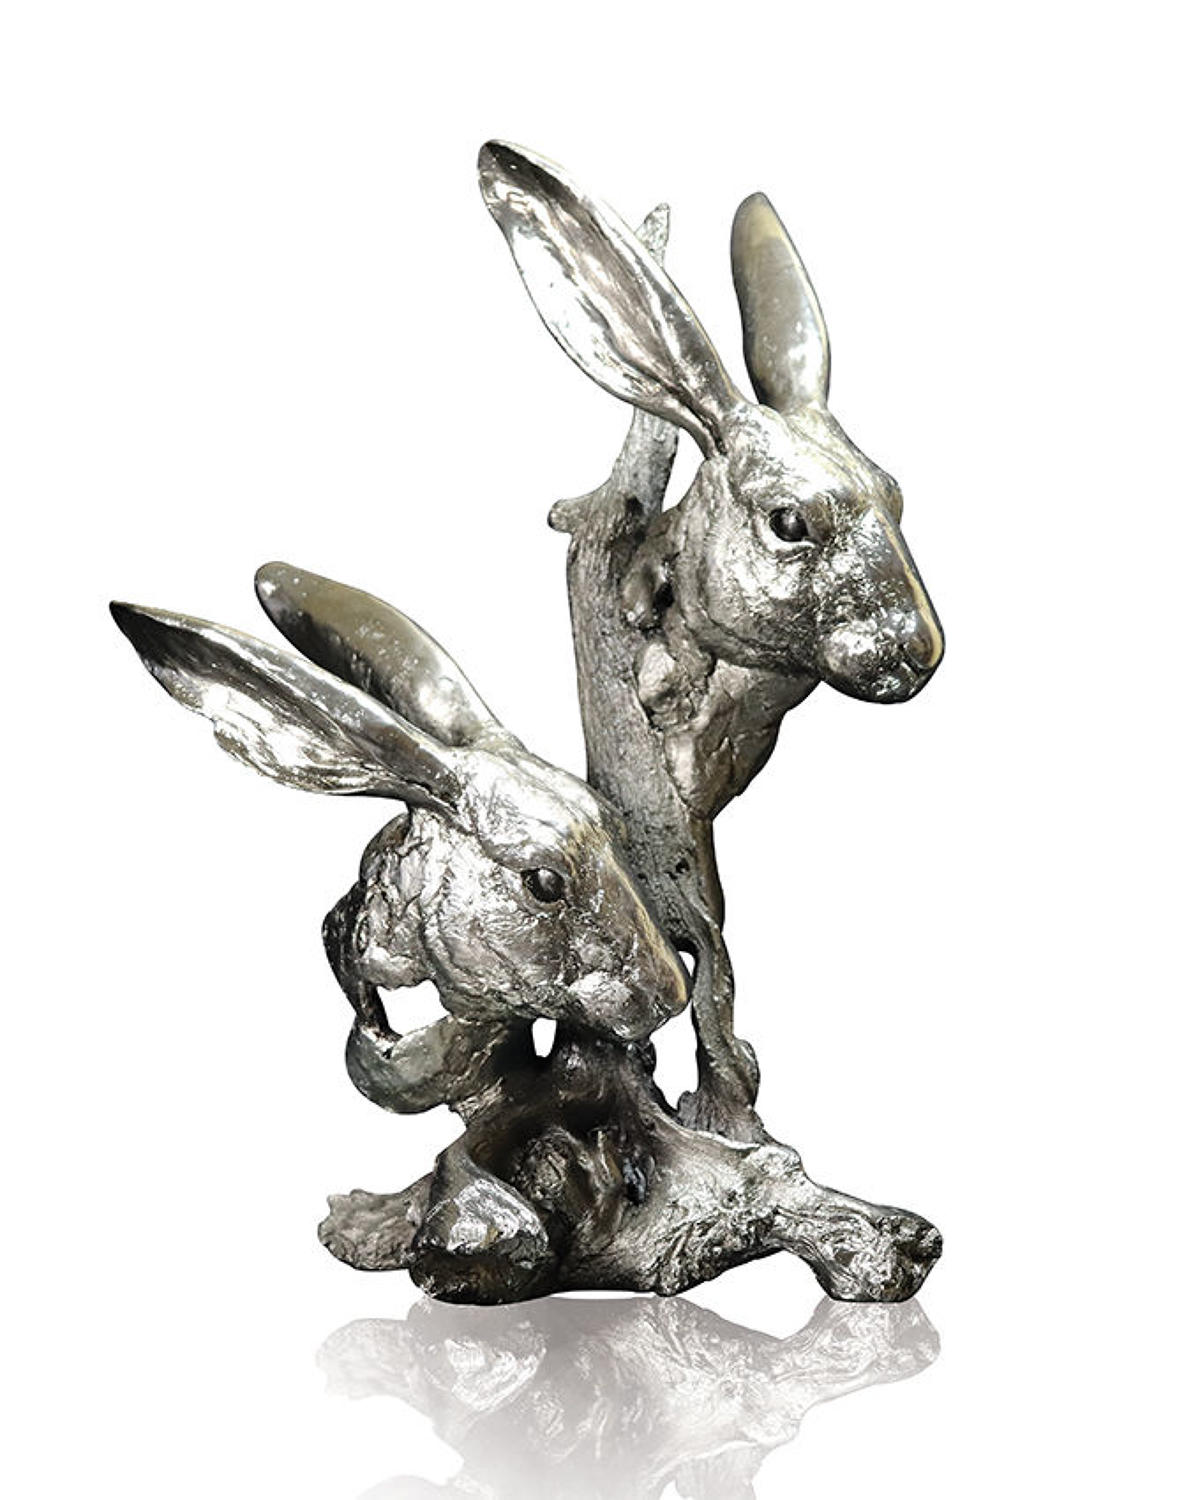 Nickel Resin Sculpture of Hares